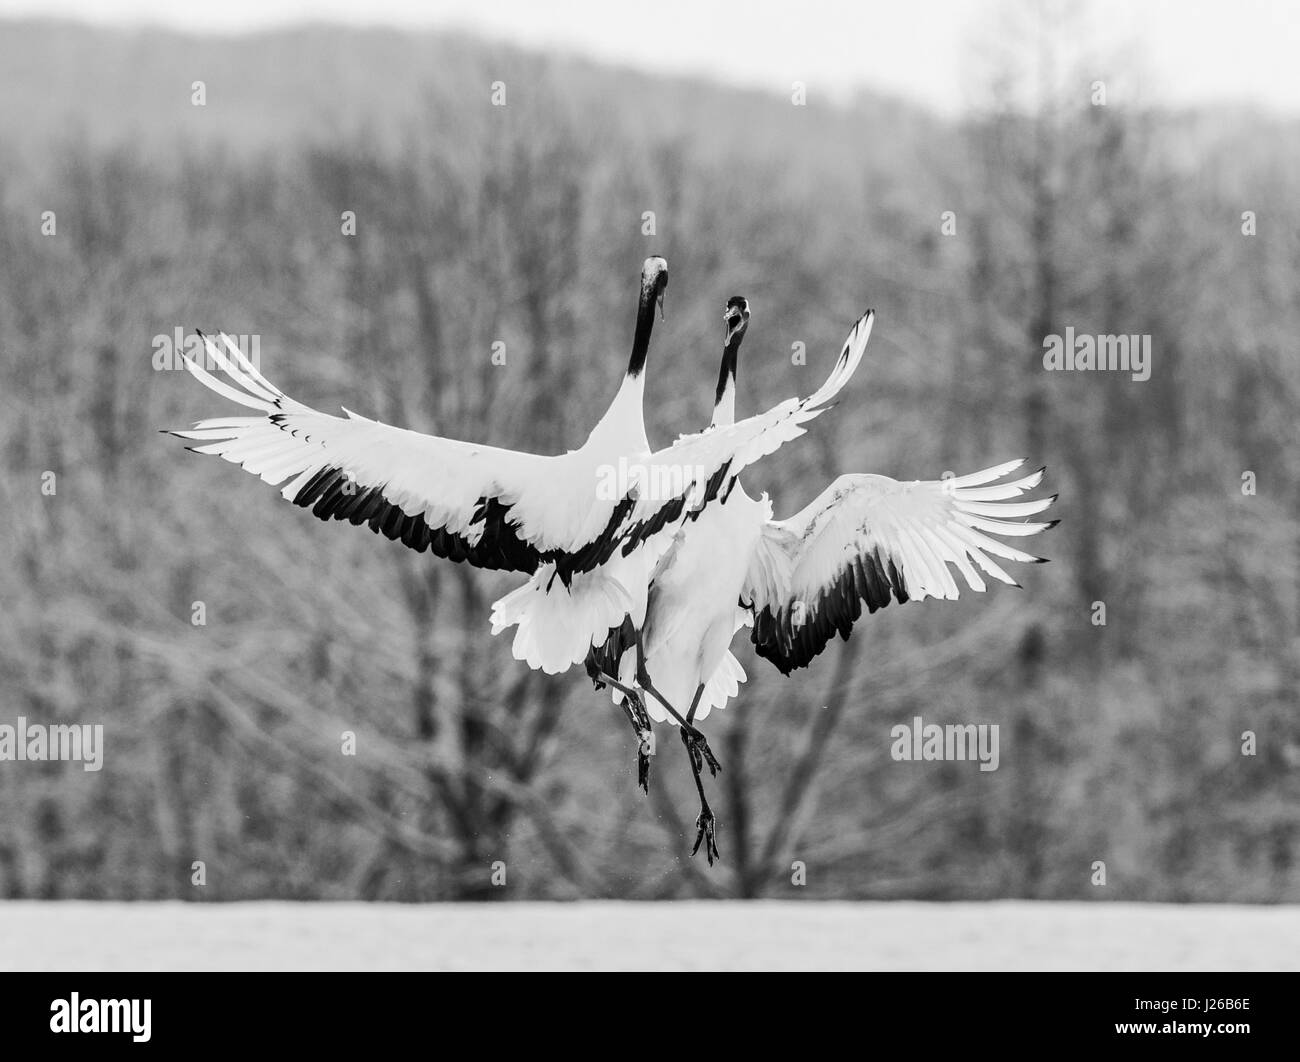 Two Japanese cranes in flight. Japan. Hokkaido. Tsurui. Great illustration. Stock Photo